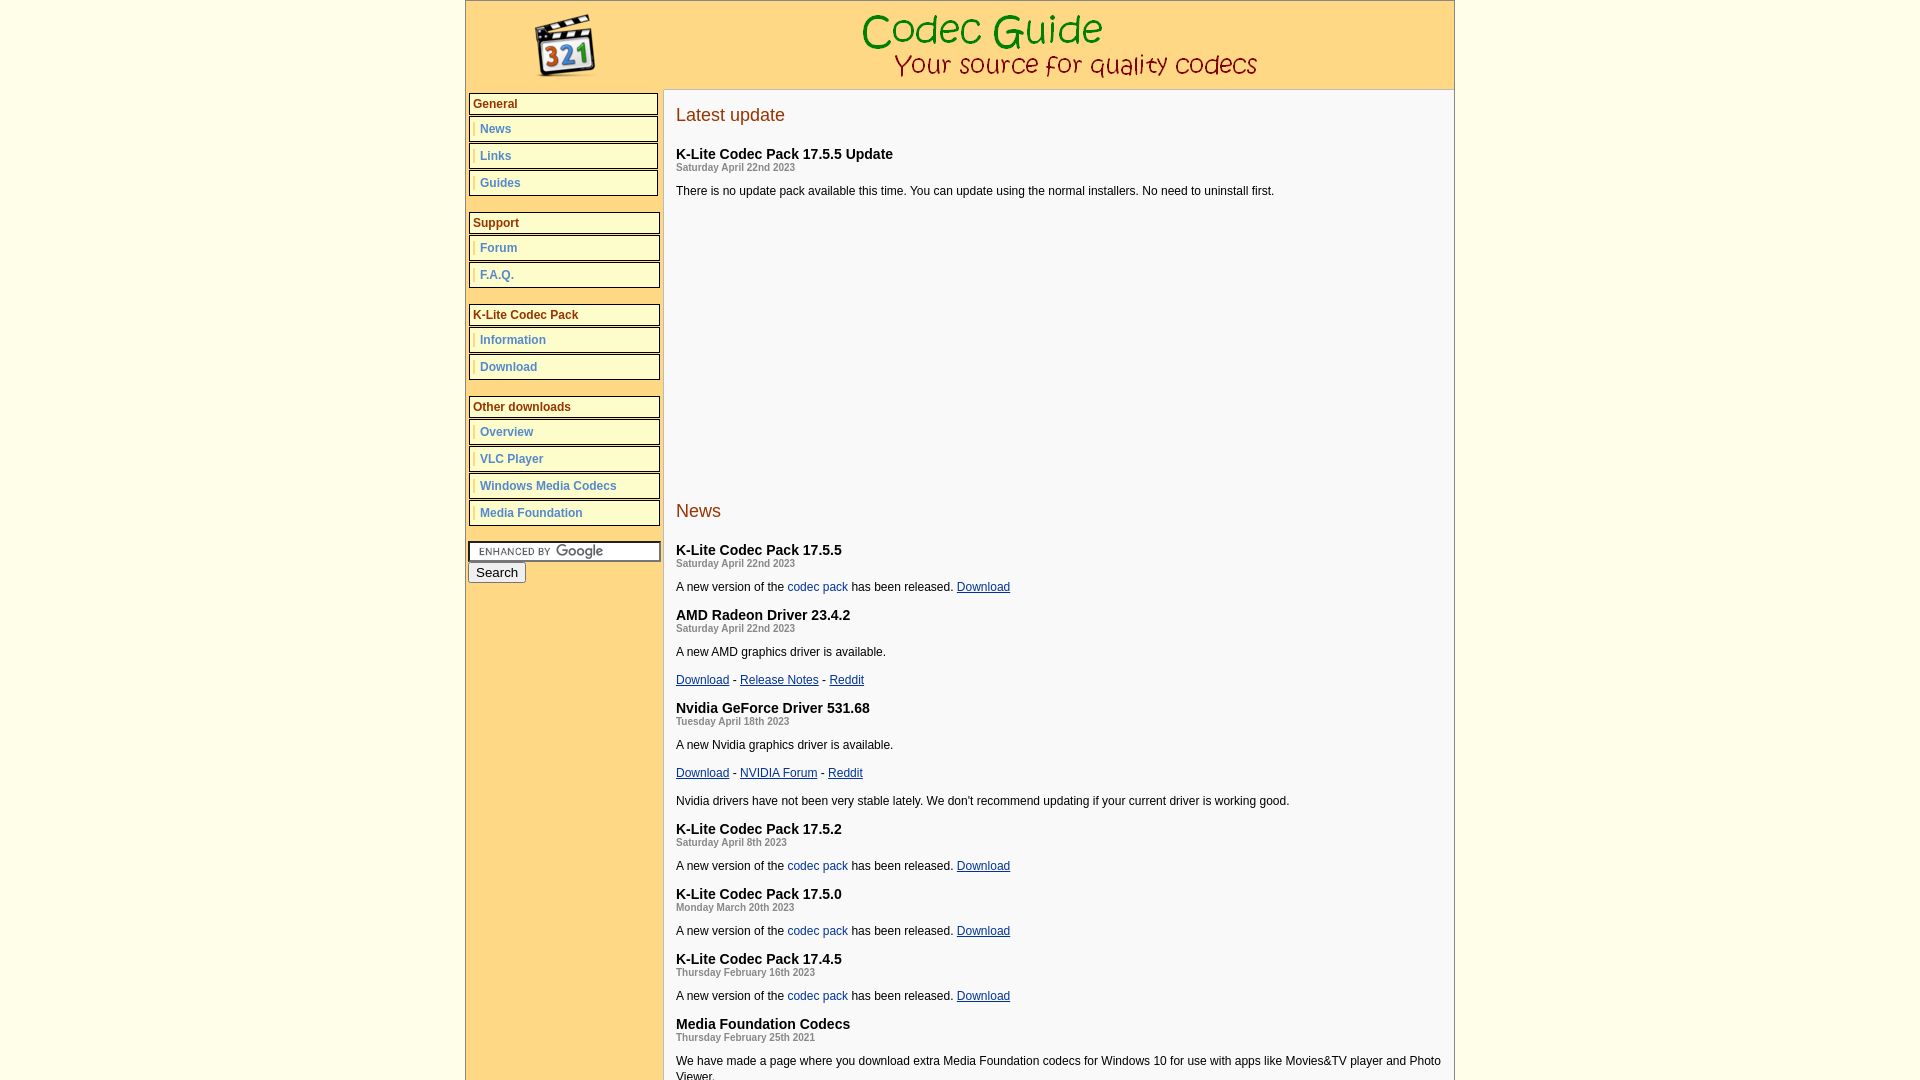 Status do site codecguide.com está   ONLINE